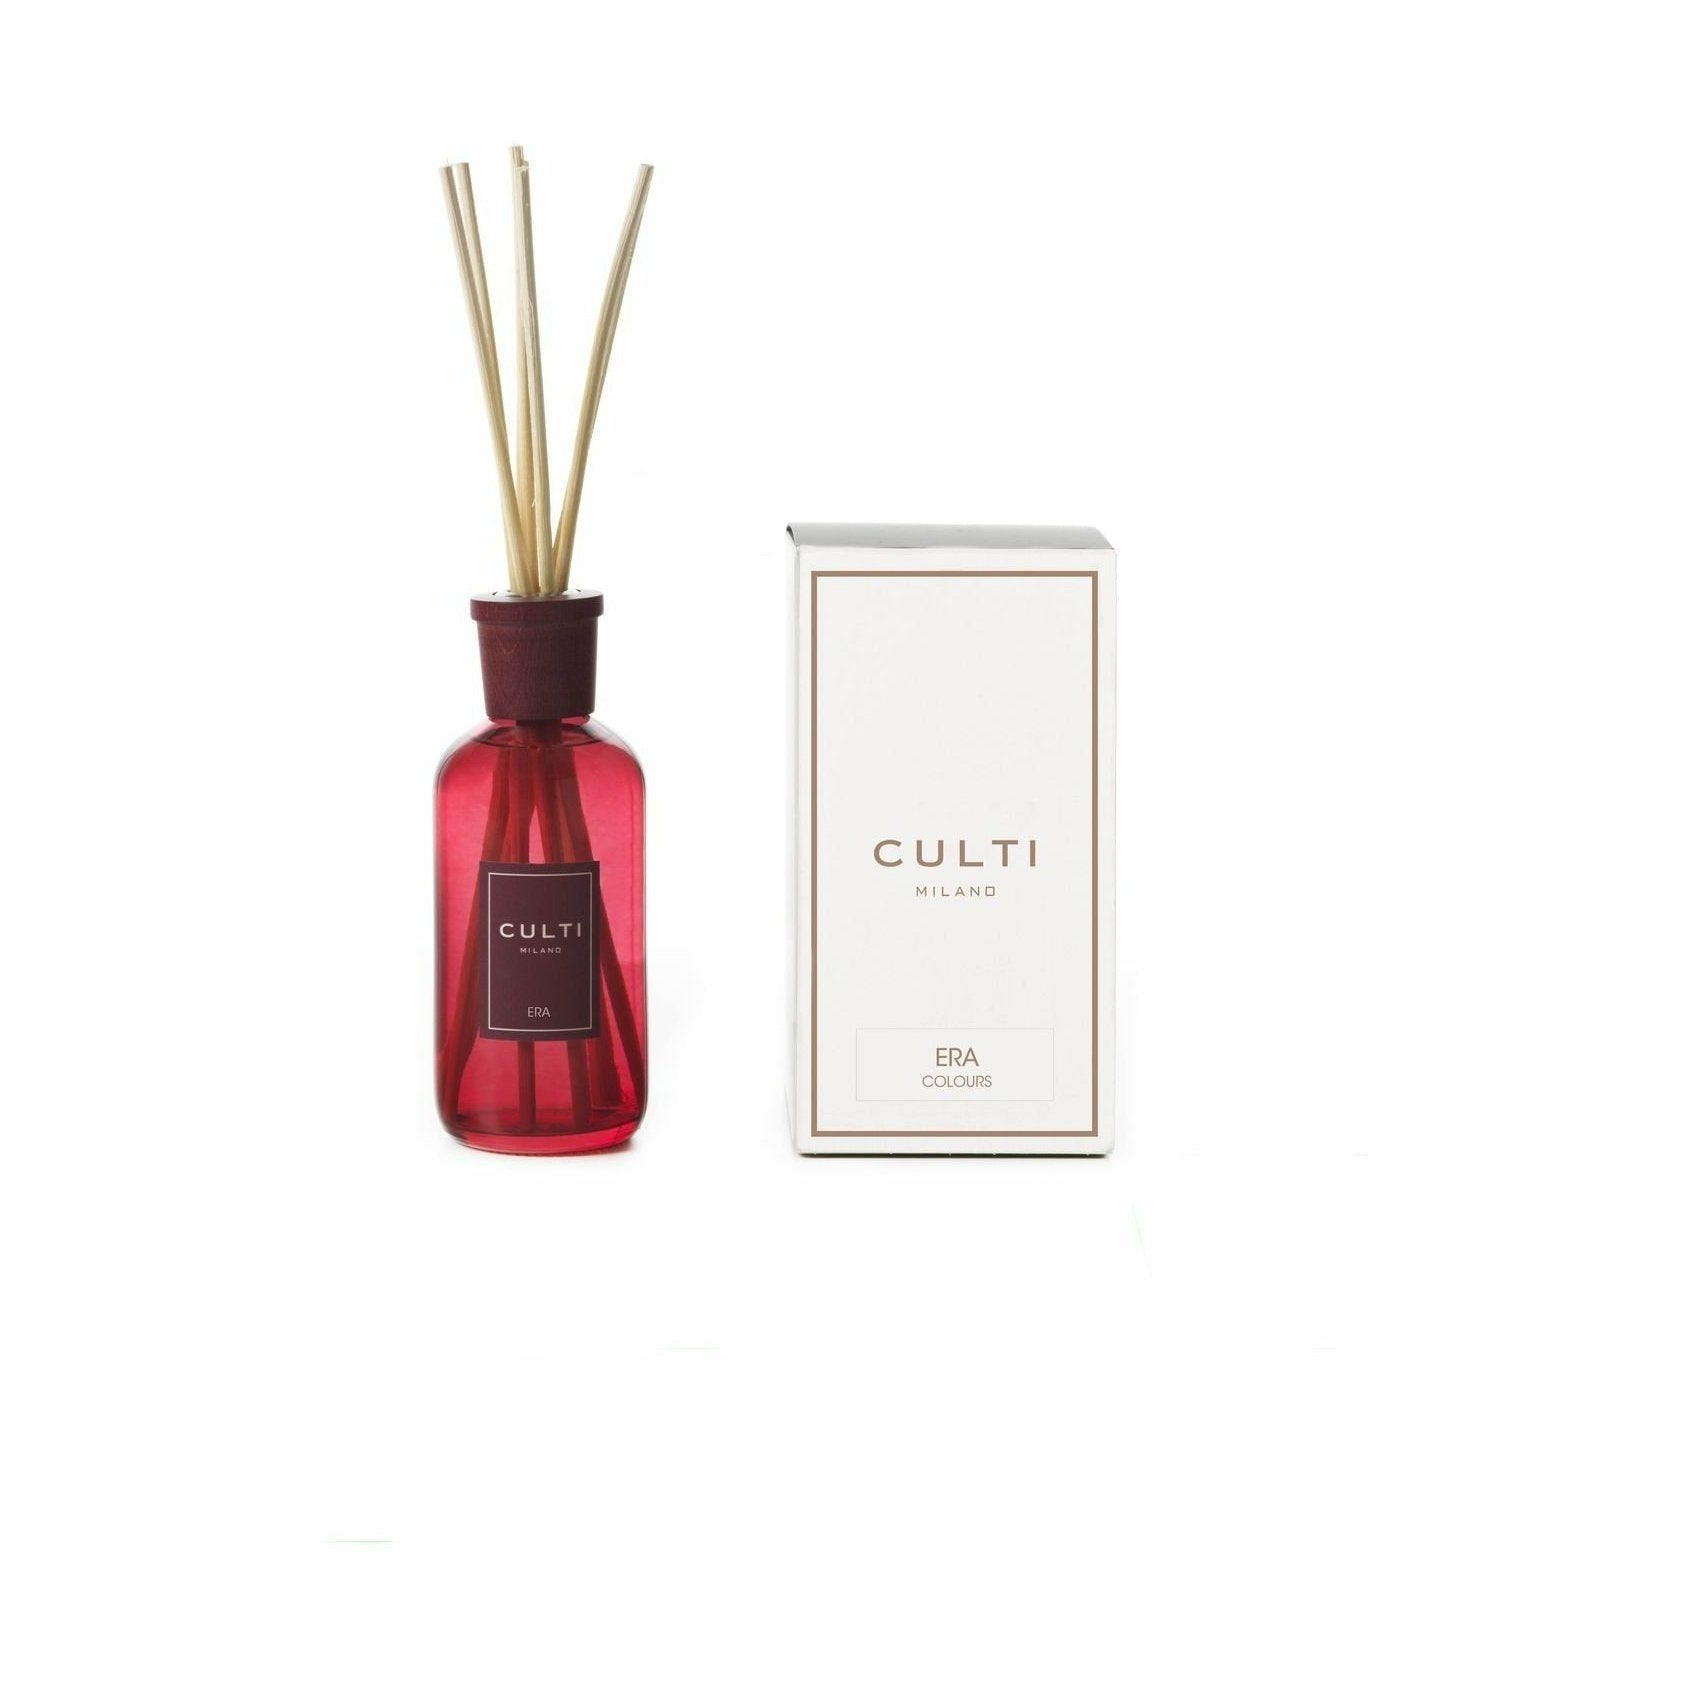 Culti Milano Couleurs Esrome du diffuseur de parfum, 250 ml